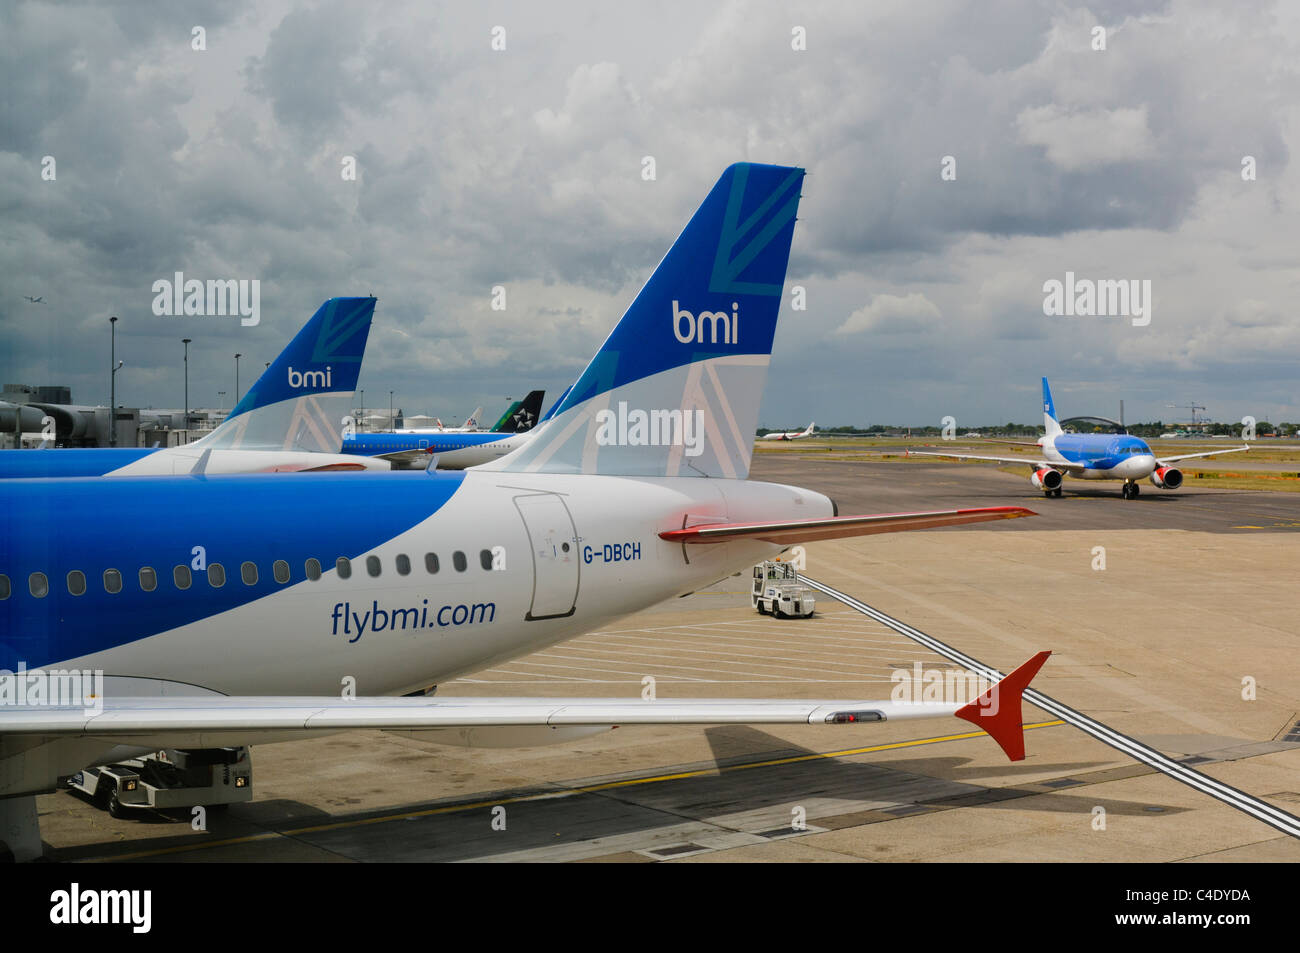 Nombre de BMI (British Midland International) des aéronefs à l'aéroport de Londres Heathrow. L'IMC a été achetée par British Airways en 2012 Banque D'Images